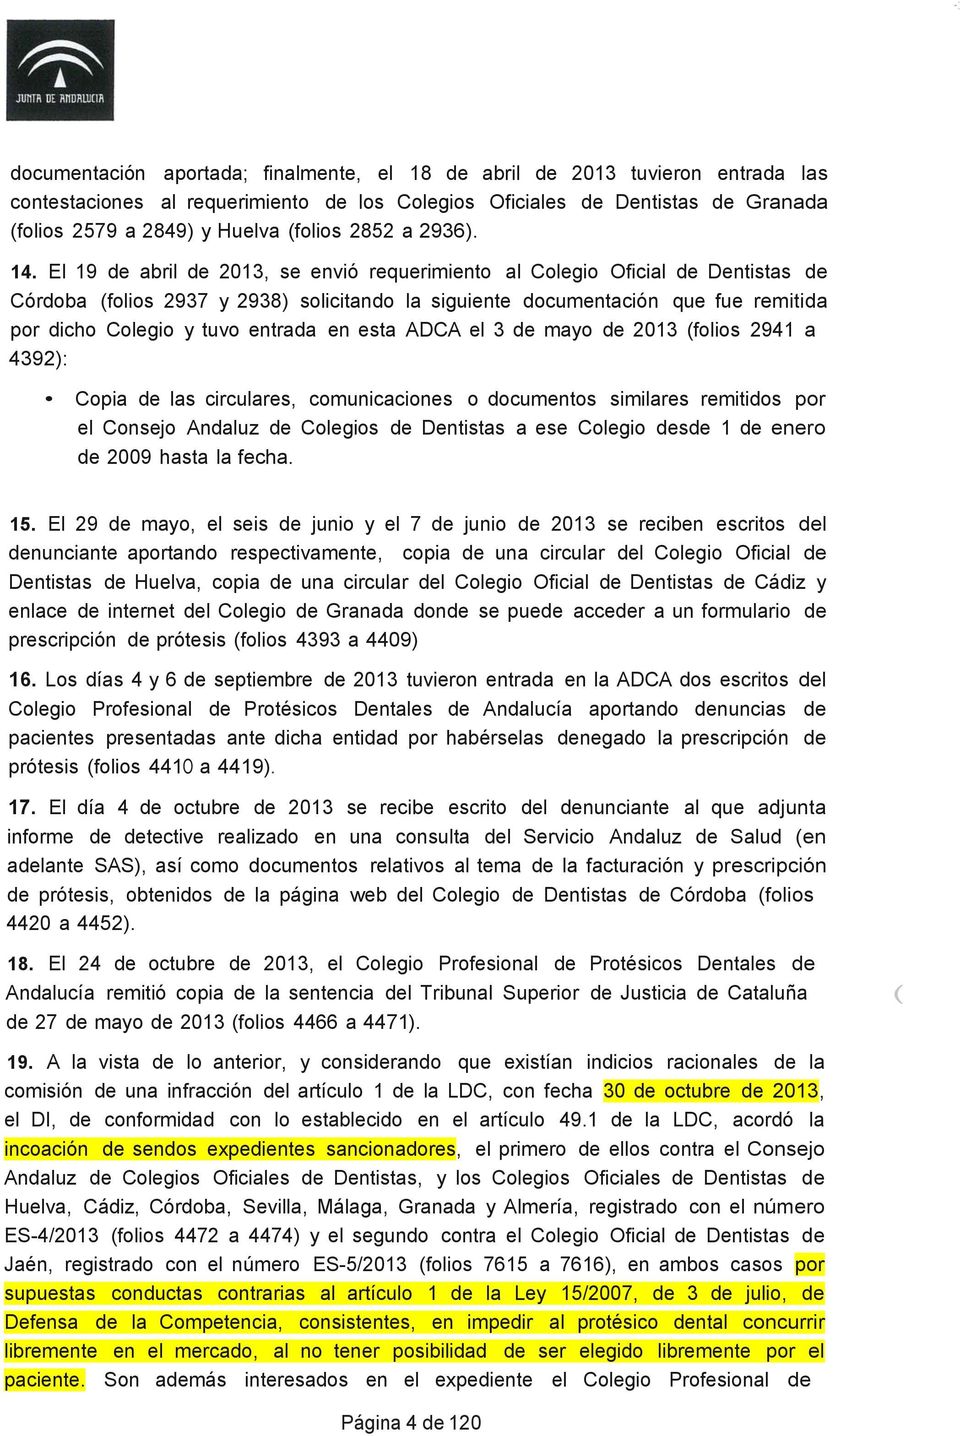 El 19 de abril de 2013, se envió requerimiento al Colegio Oficial de Dentistas de Córdoba (folios 2937 y 2938) solicitando la siguiente documentación que fue remitida por dicho Colegio y tuvo entrada